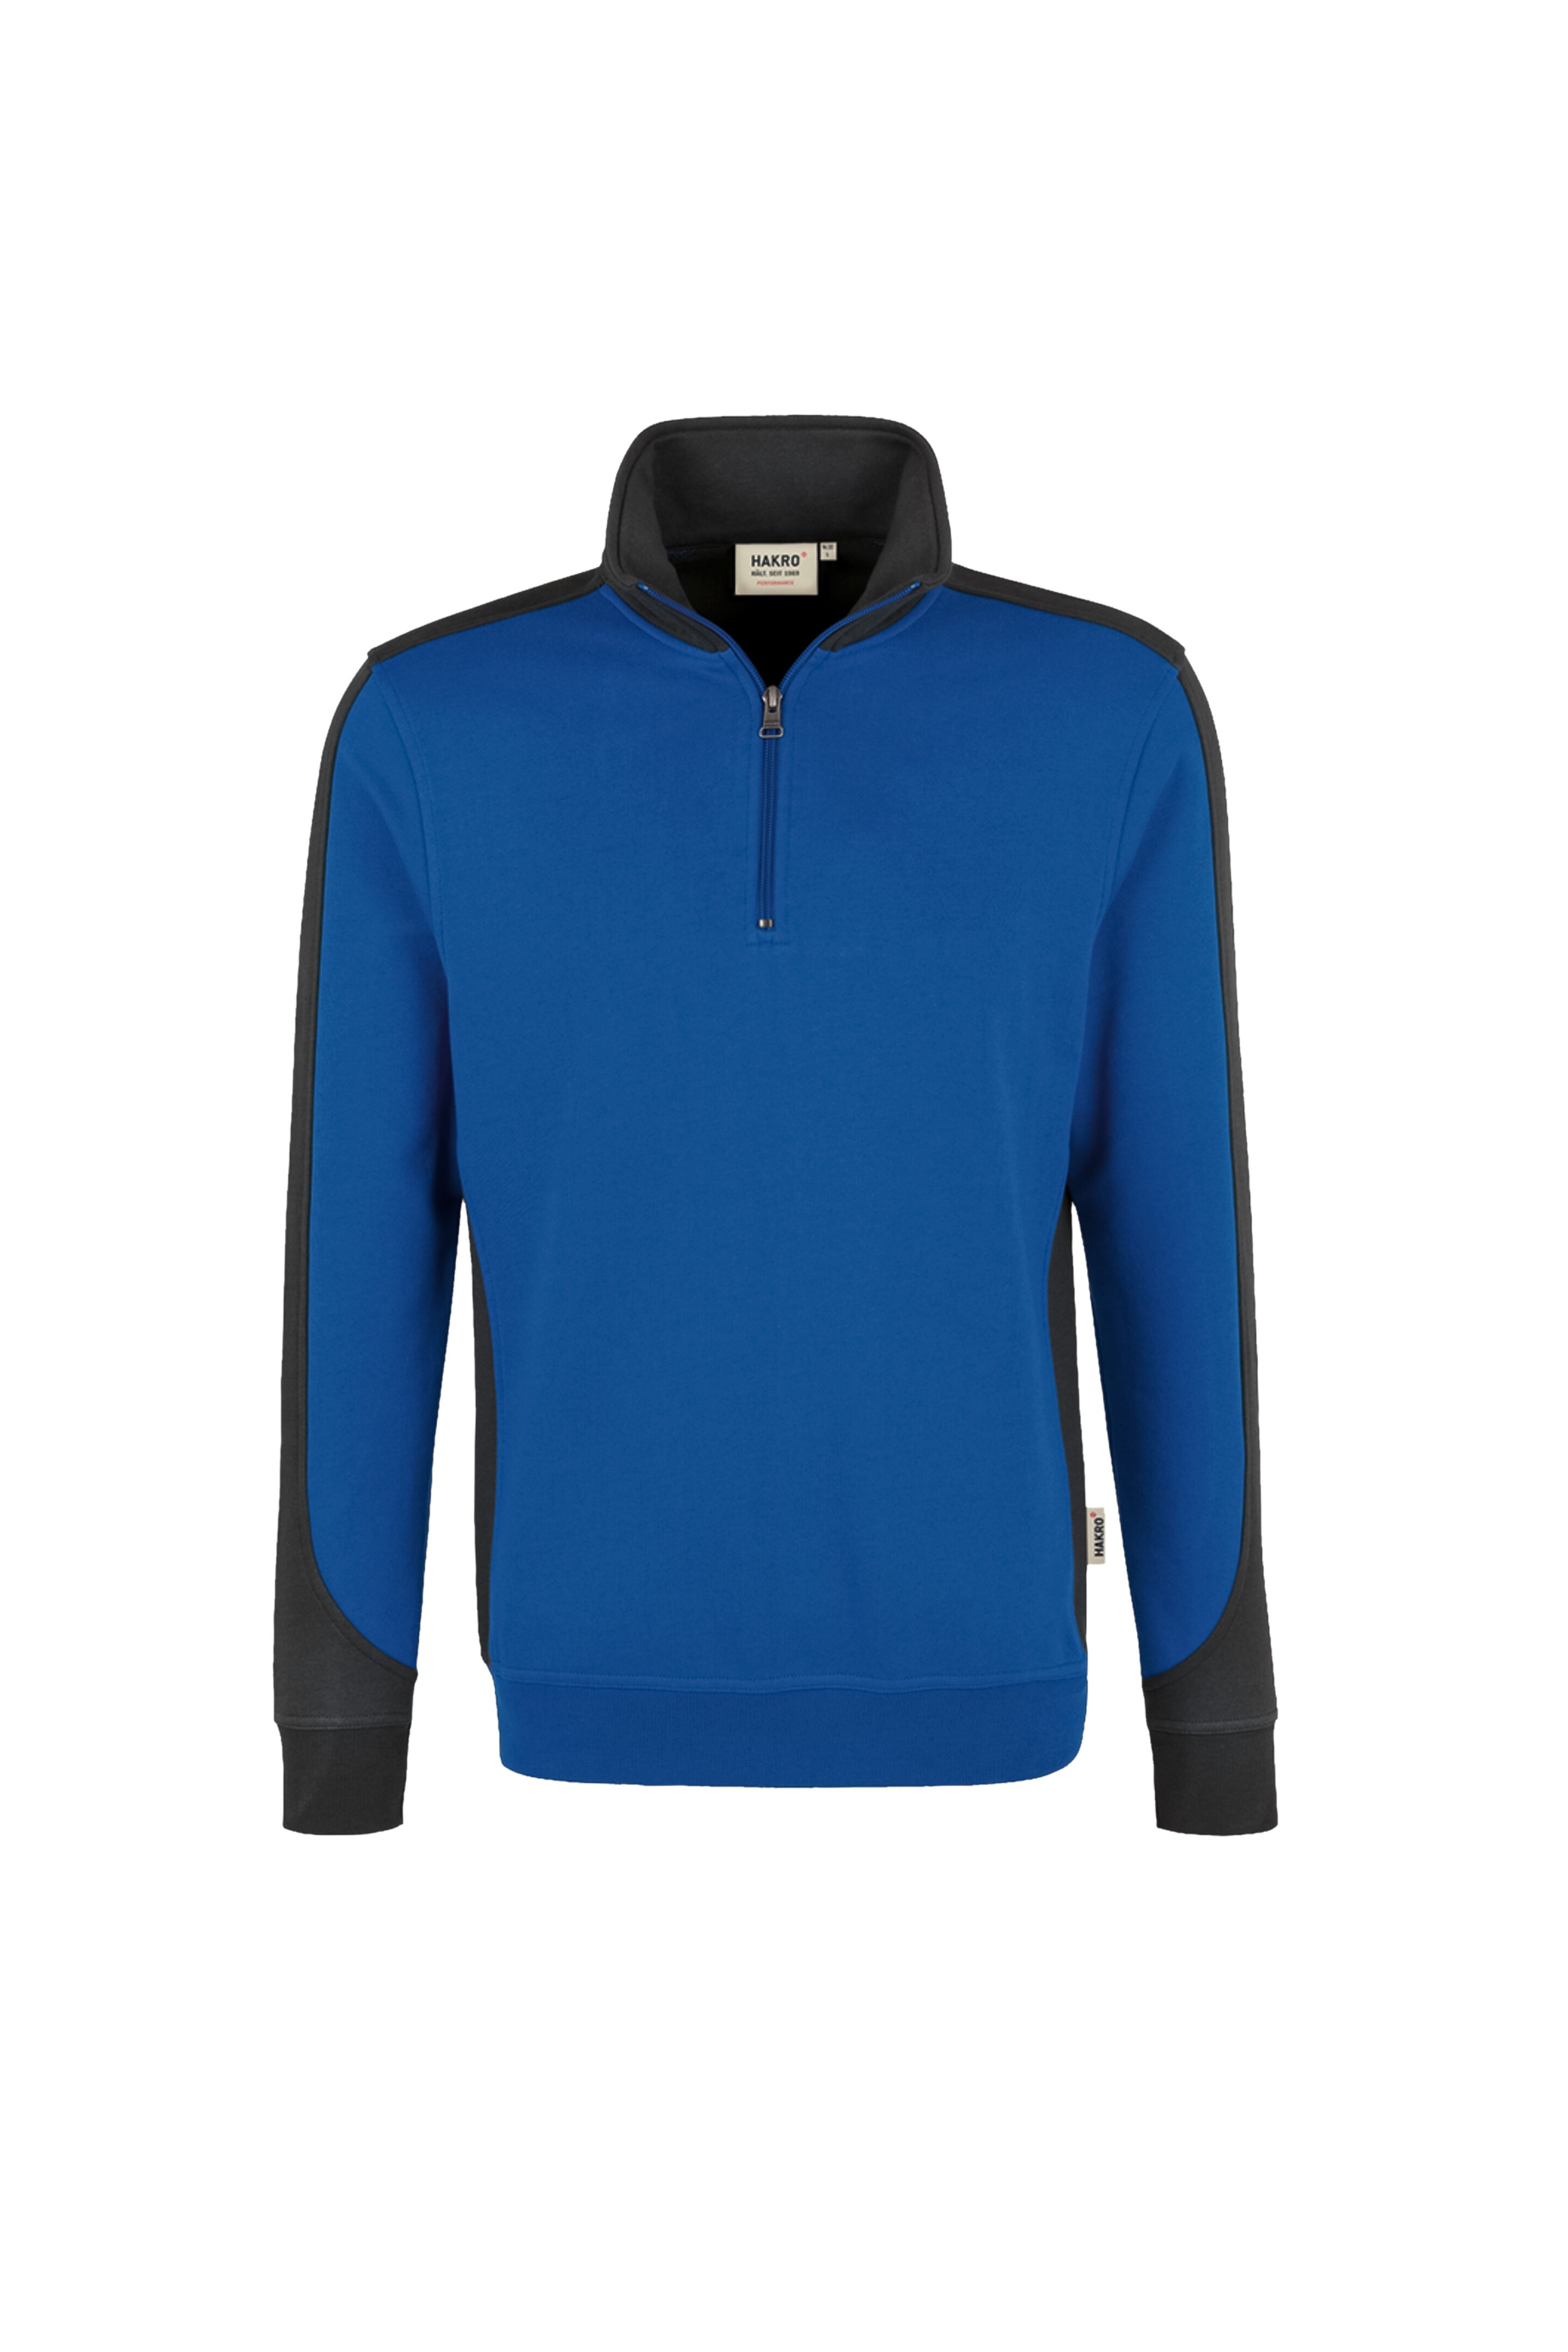 HAKRO Zip-Sweatshirt Contrast Mikralinar® No. 476